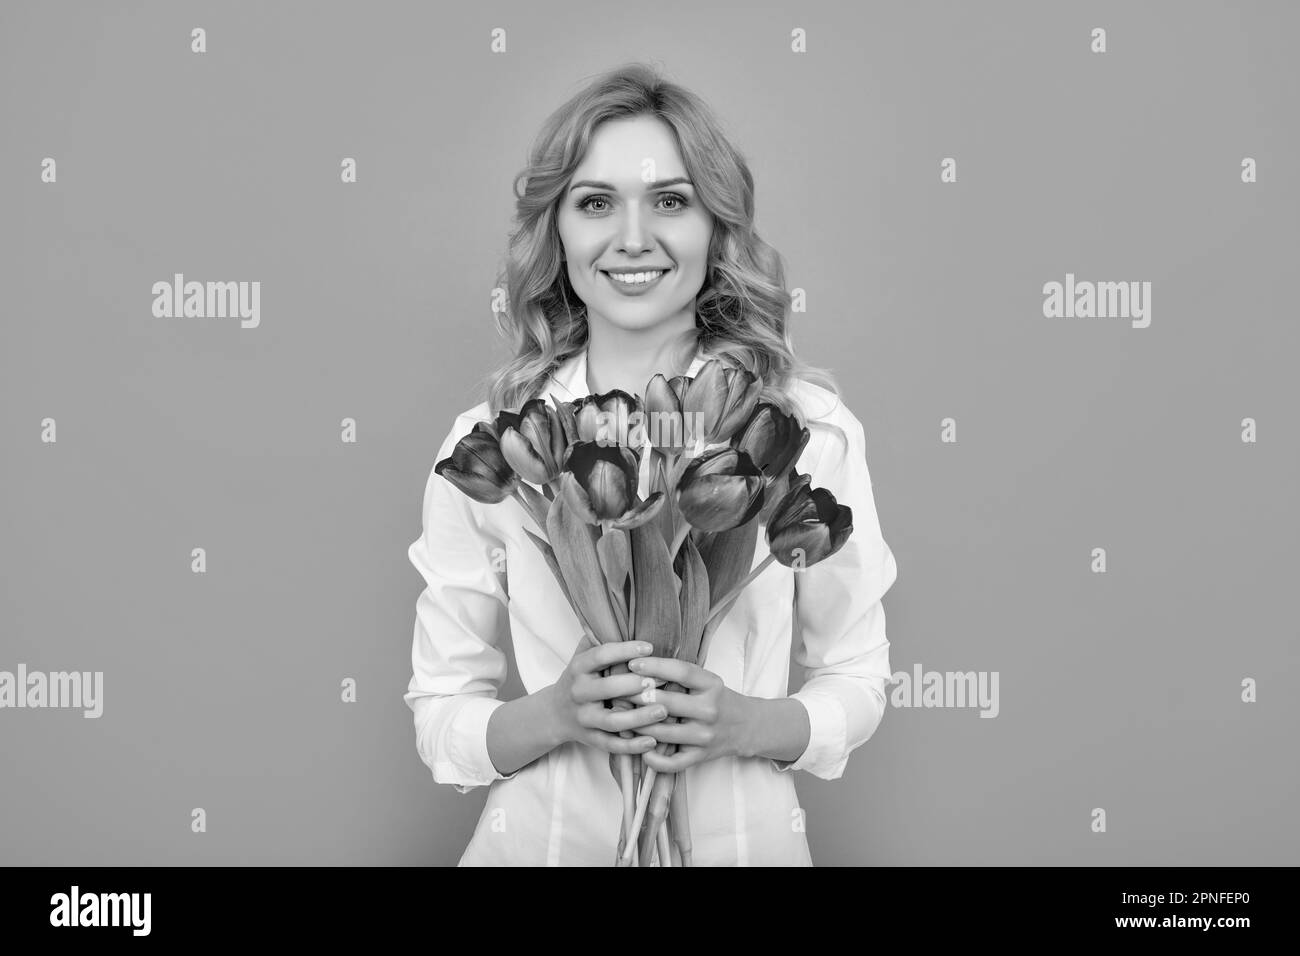 Lächelnde blonde Frau mit Frühlingsblumen auf grauem Hintergrund Stockfoto